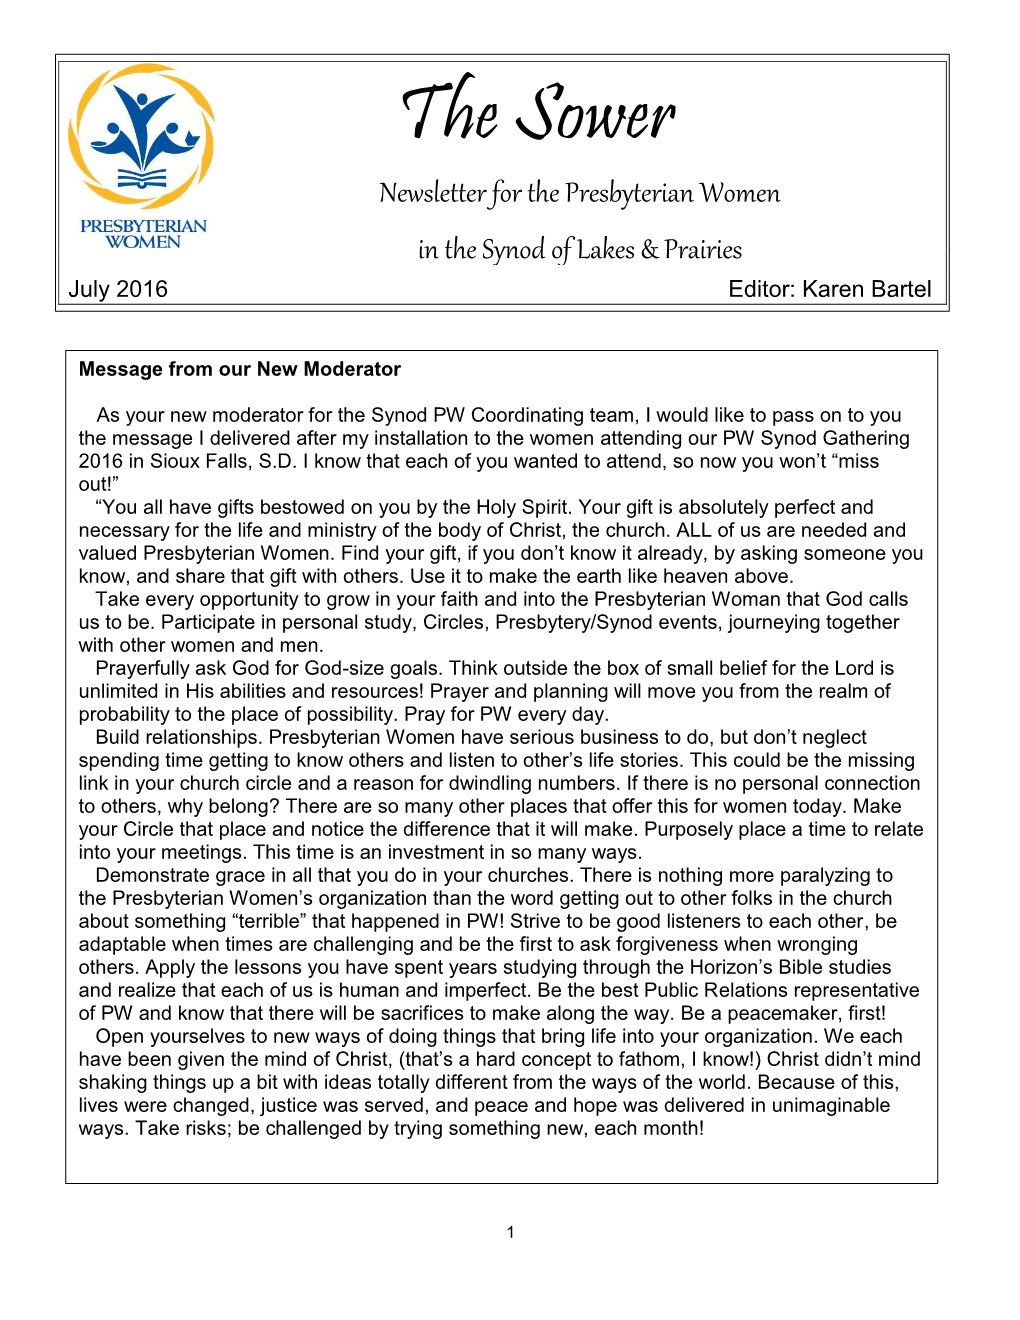 The Sower Newsletter for the Presbyterian Women